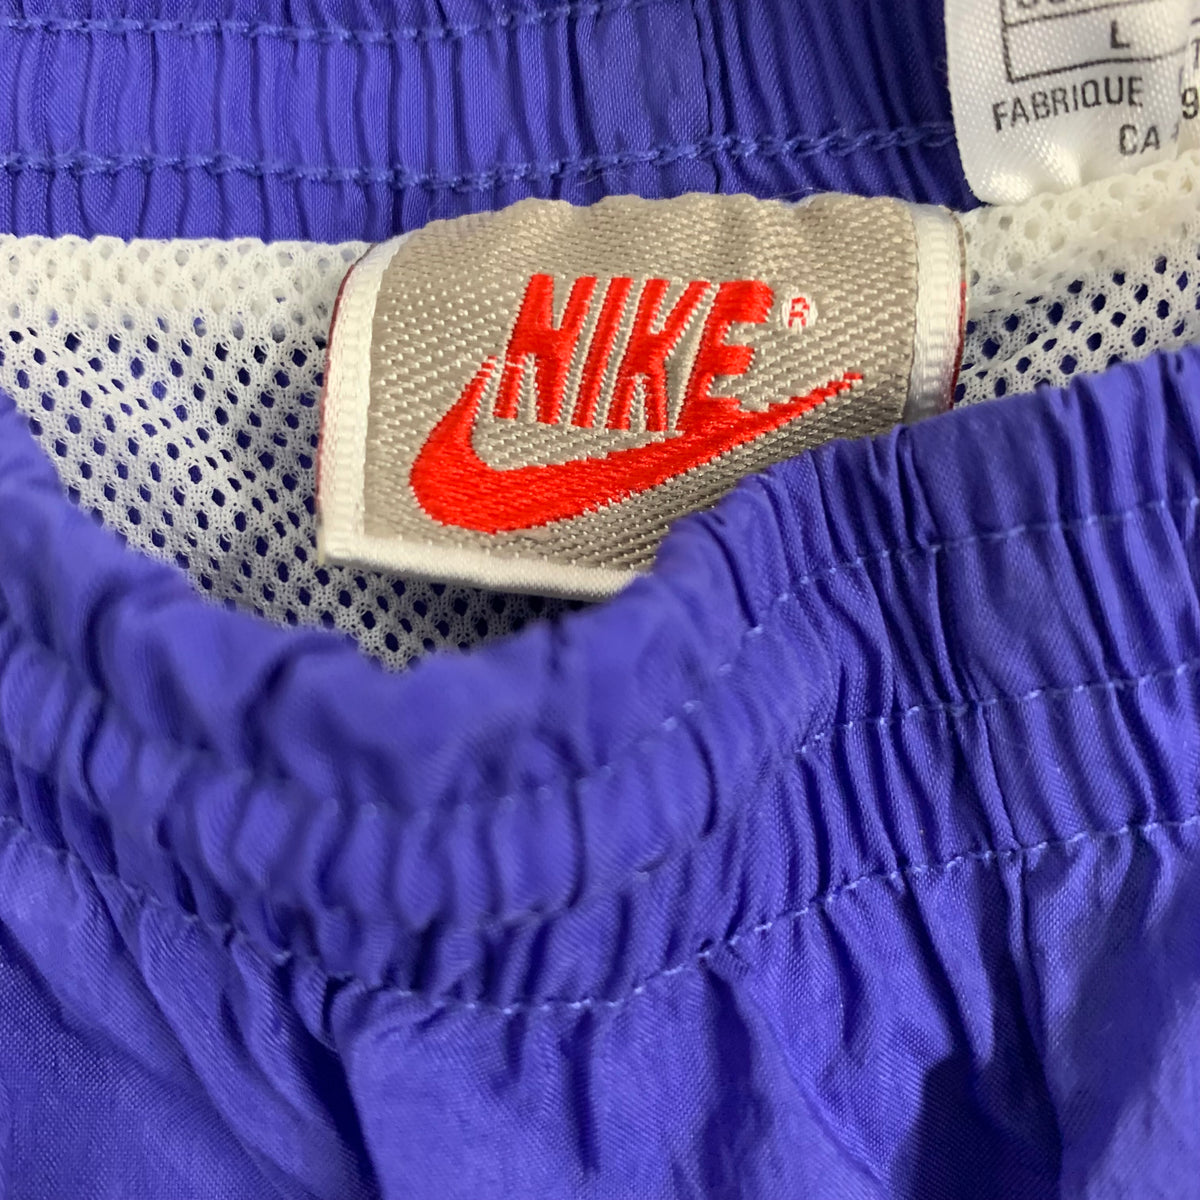 Vintage Nike &quot;Nylon&quot; Tonal Shorts